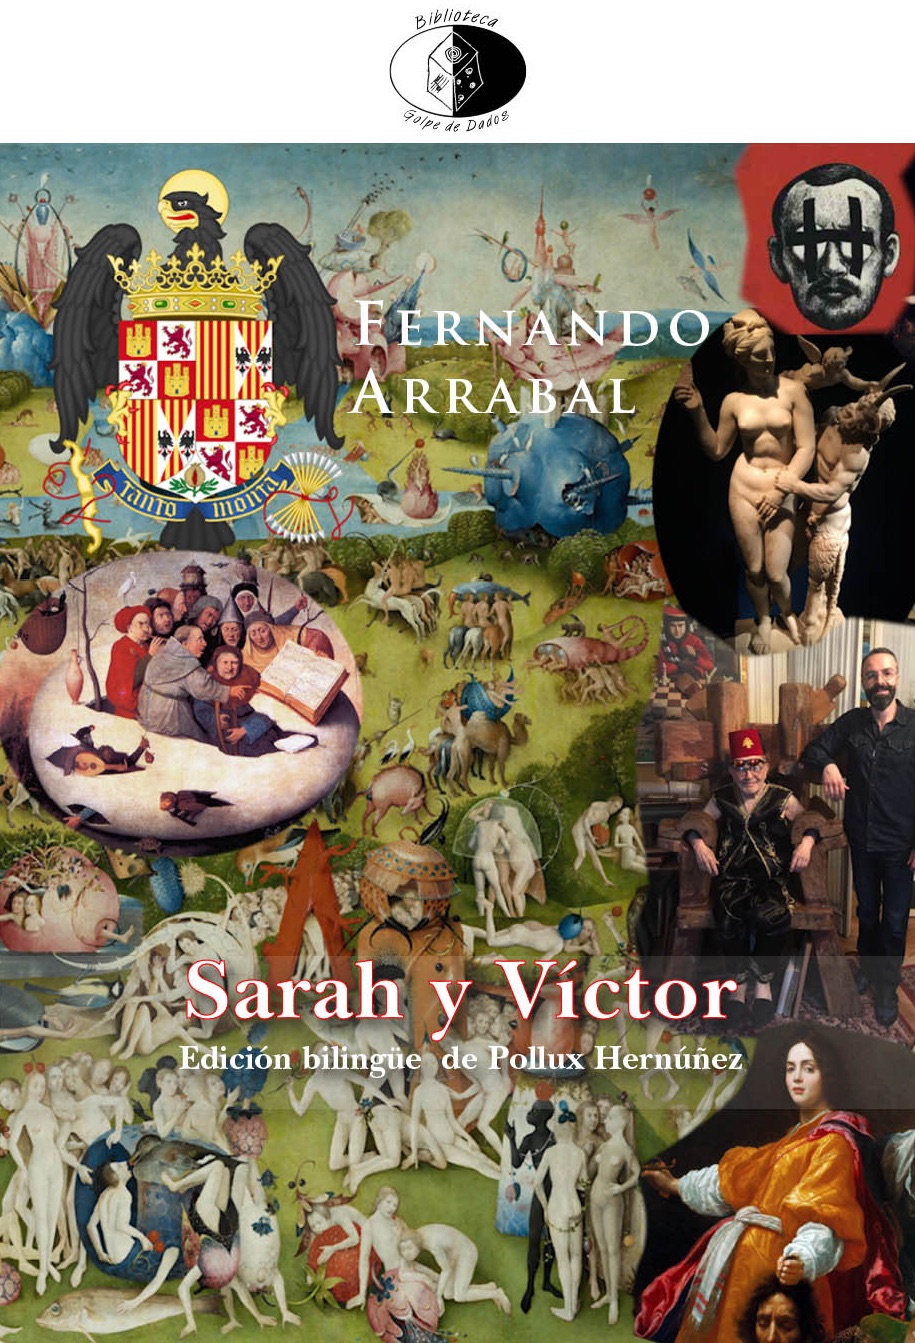 Sarah et Victor sera publié en français & en espagnol.